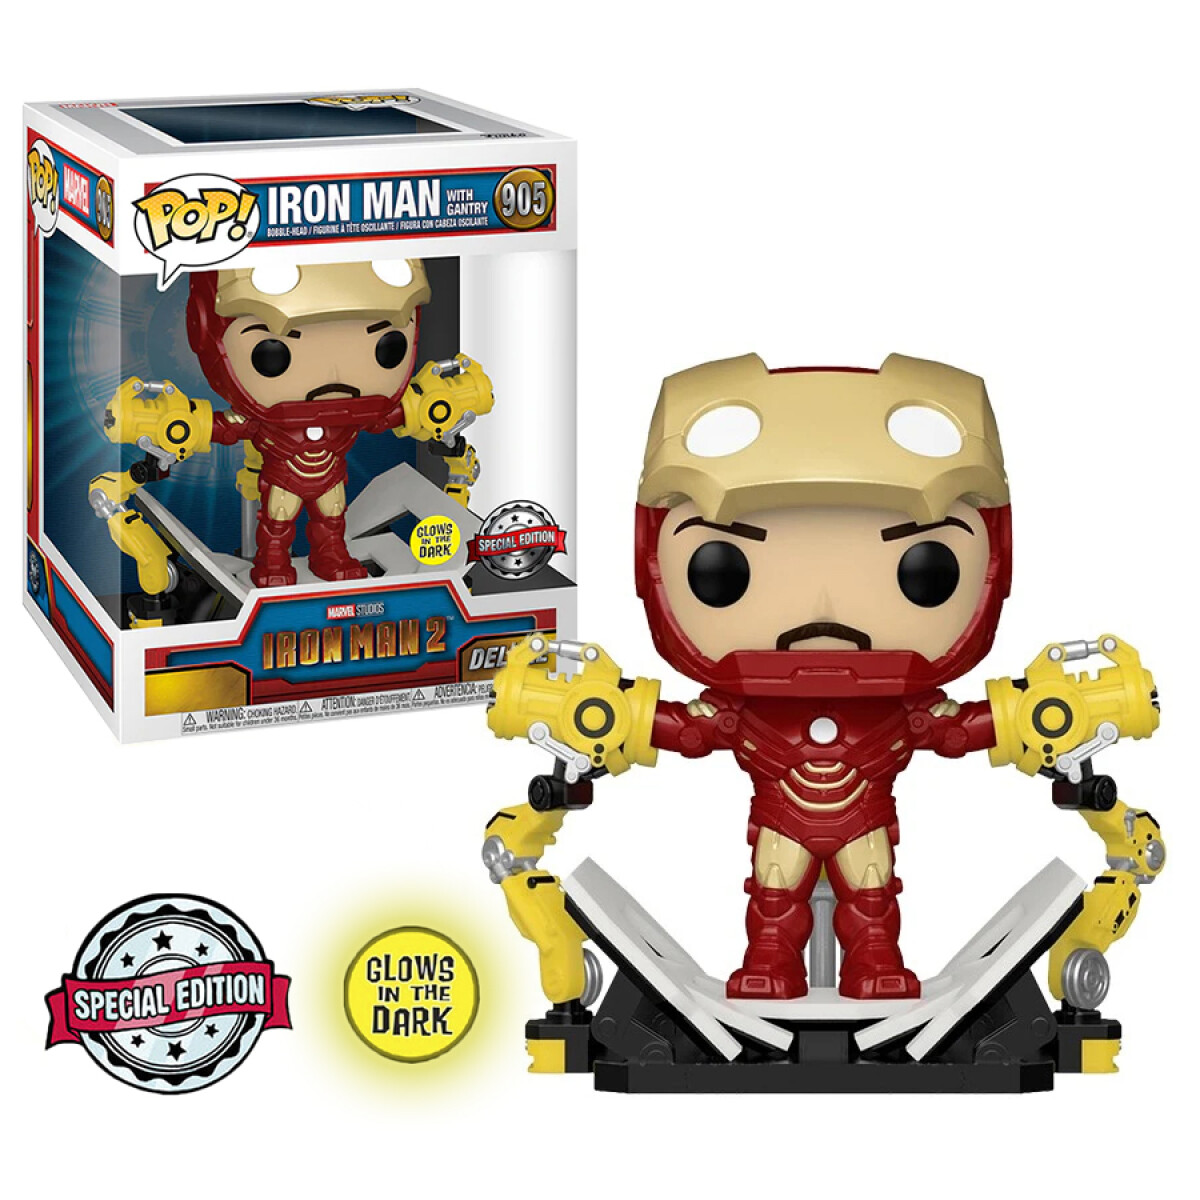 Iron Man with Gantry · Iron Man 2 [Exclusivo Deluxe] - 905 